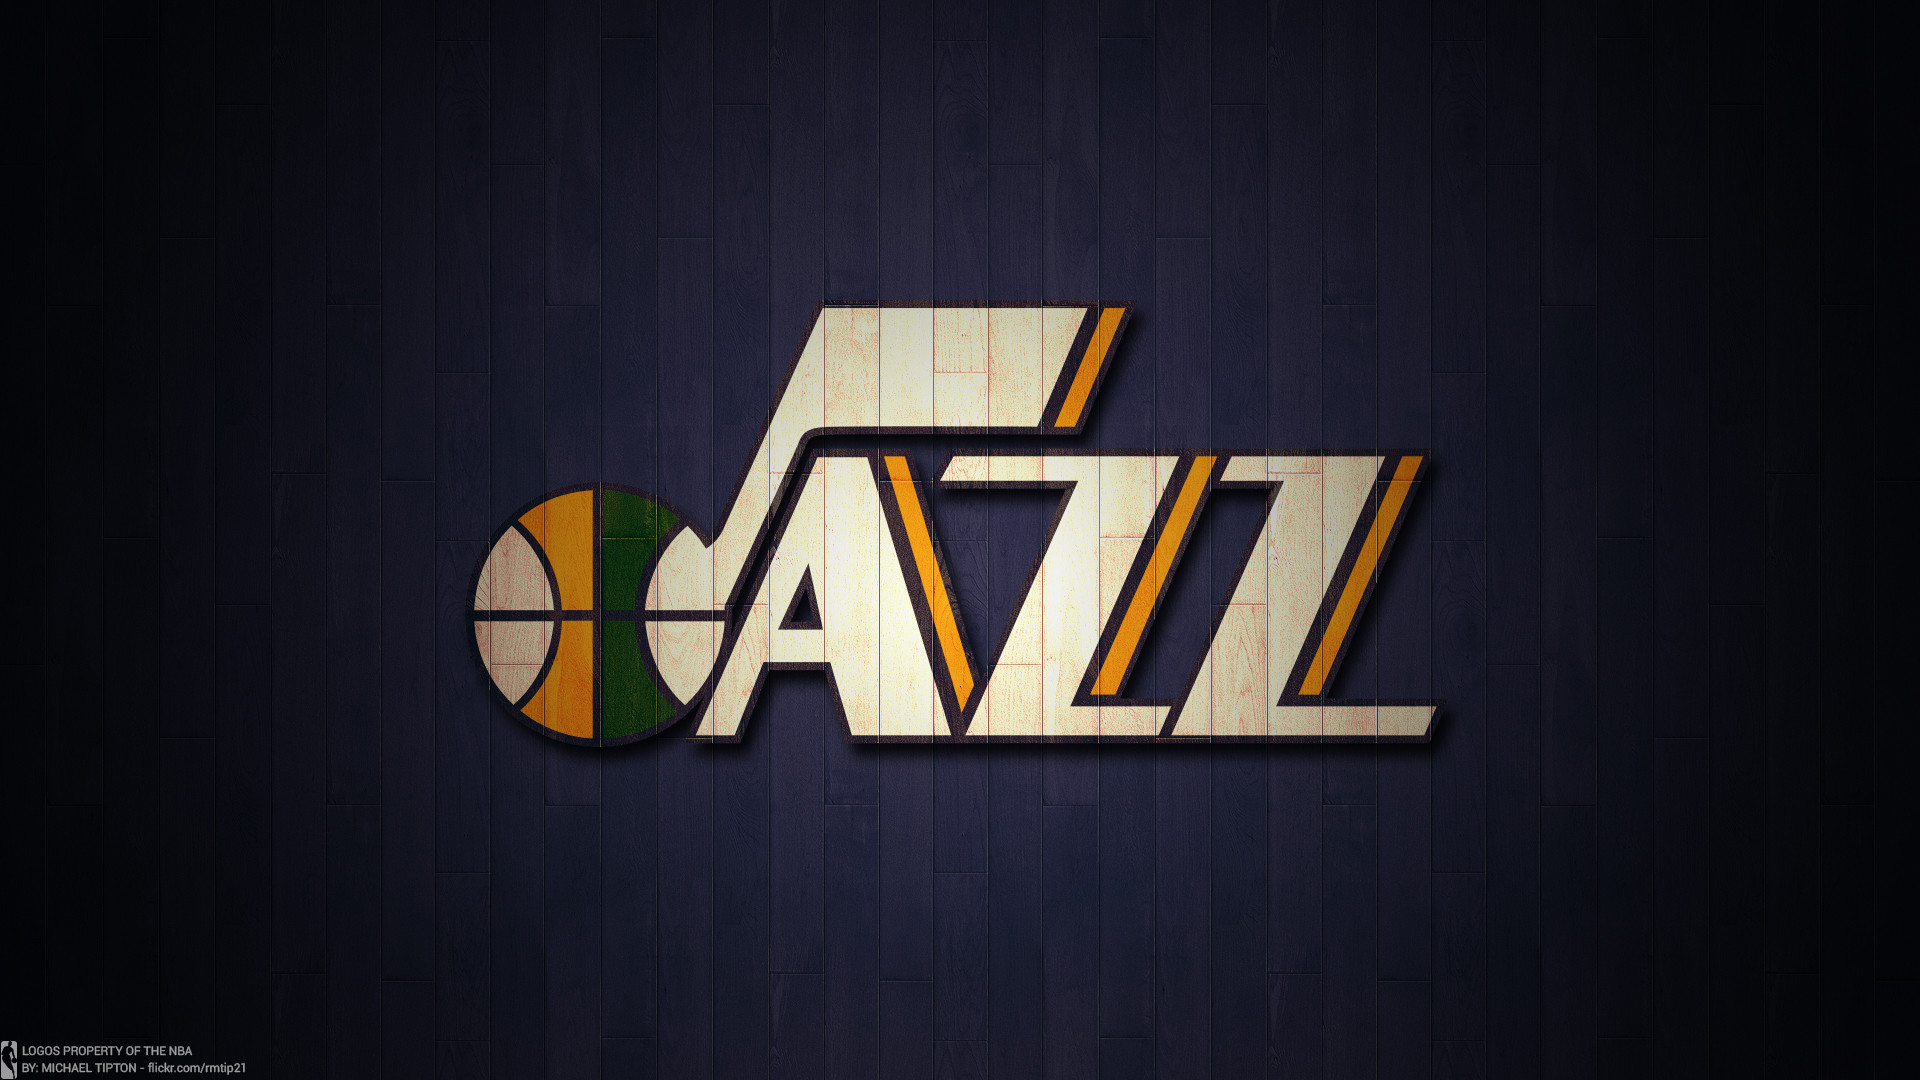 1920x1080 ... NBA 2017 Utah Jazz hardwood logo desktop wallpaper